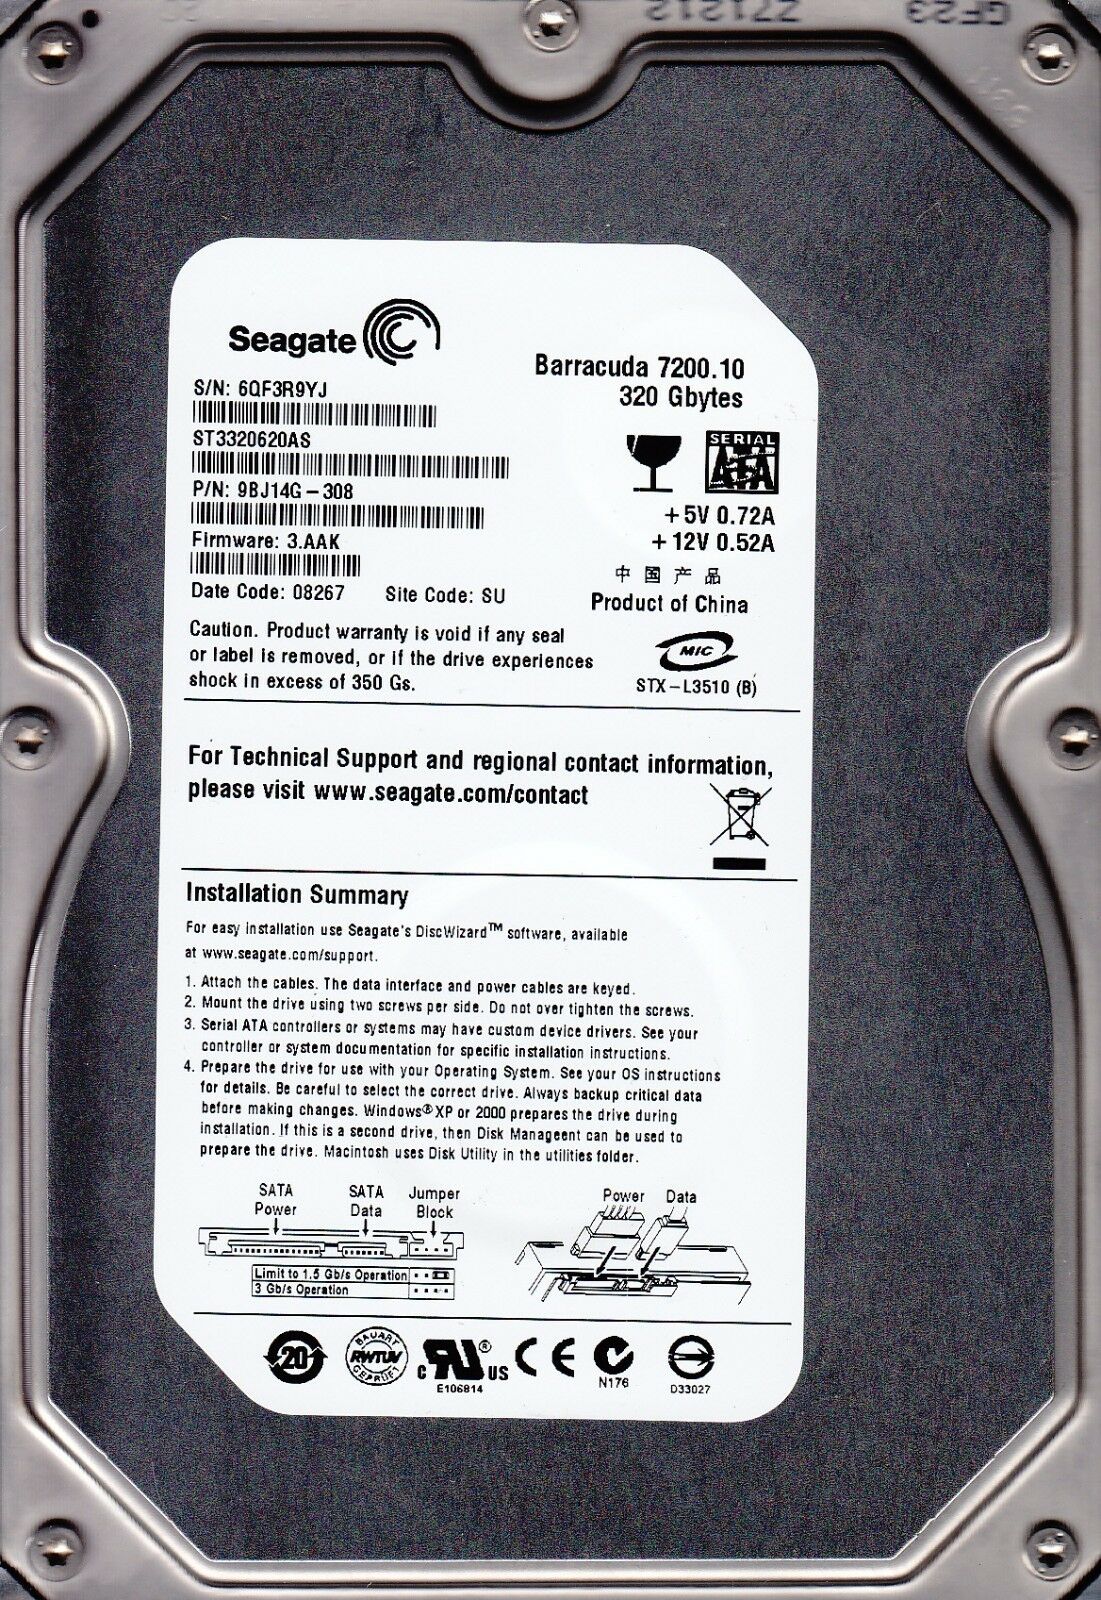 Seagate 320GB BARRACUDA 7200.7 SATA HDD  (ST3320620AS - 9BJ14G-308 )